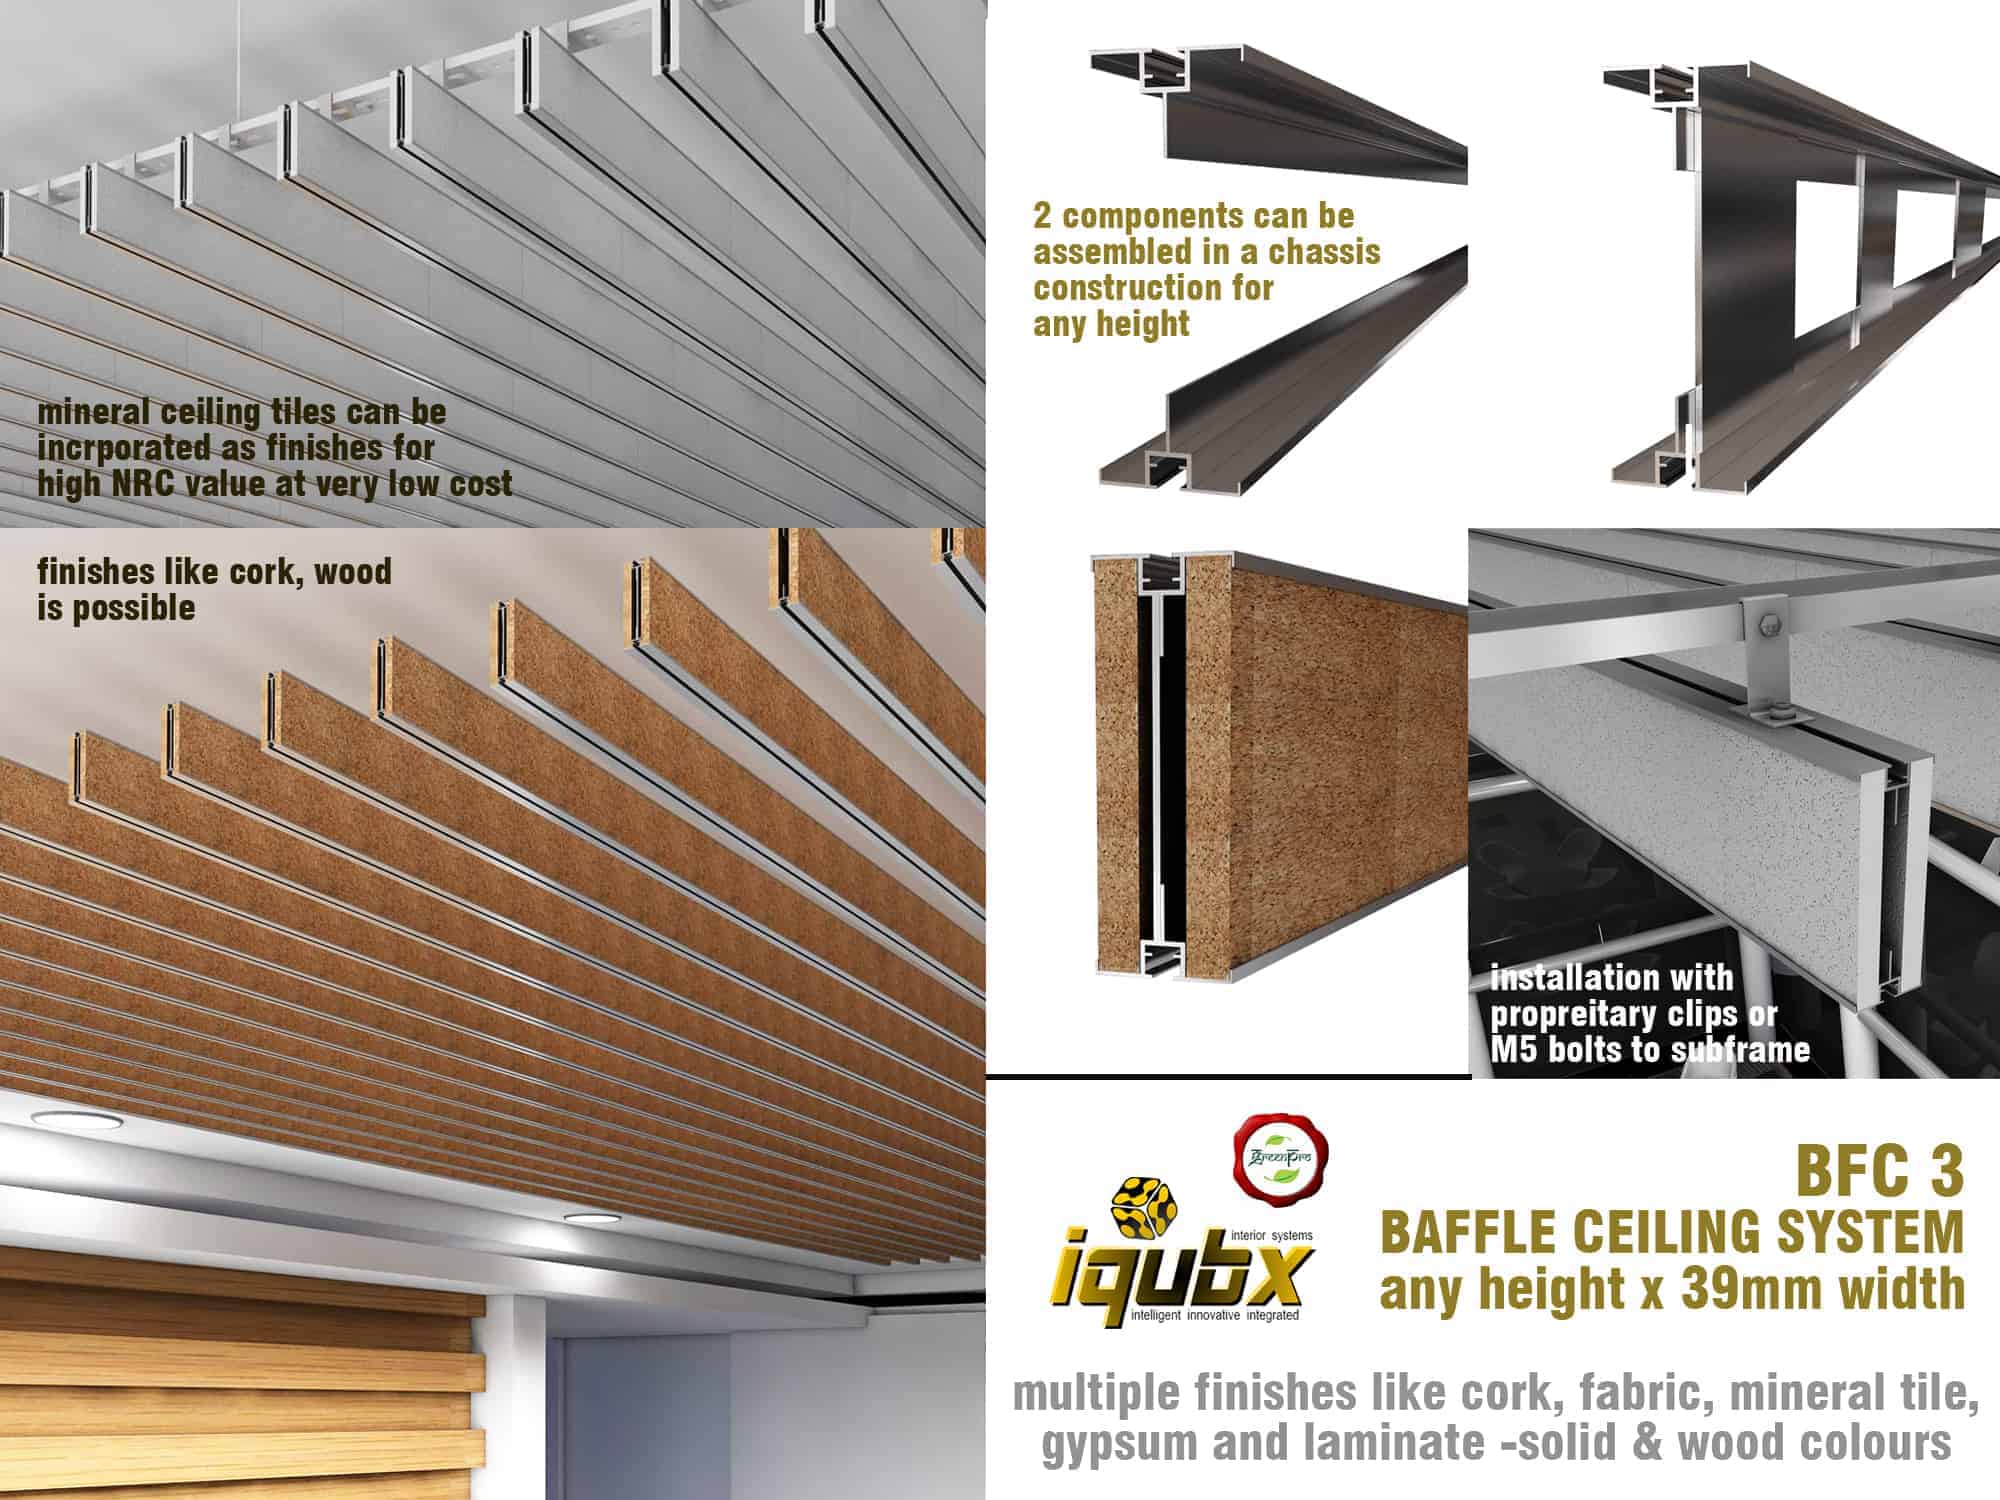 iqubx baffle ceiling bfc3